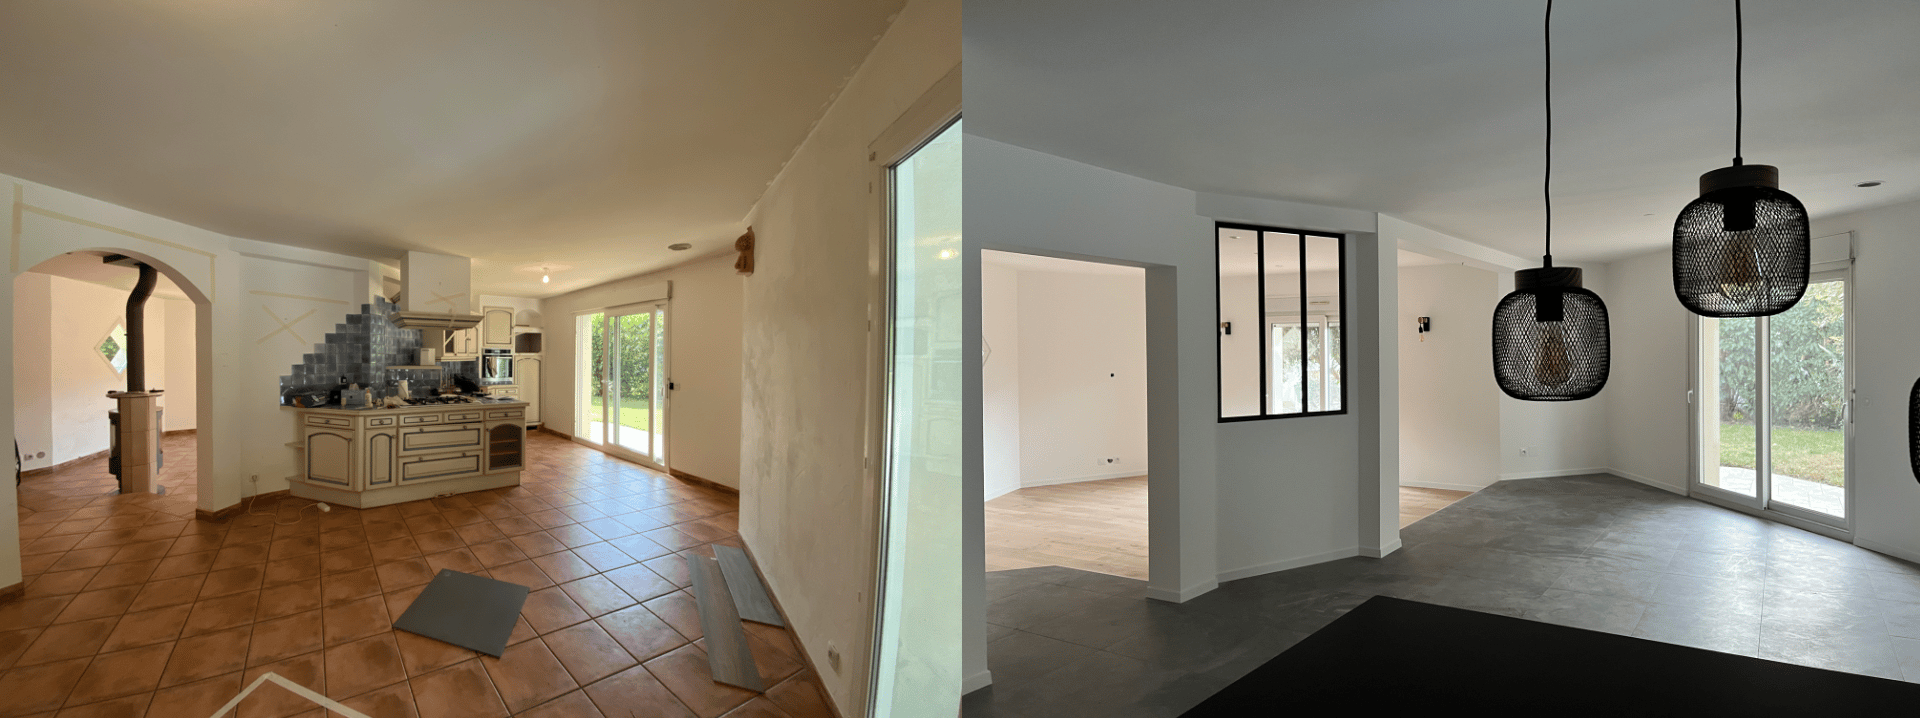 Rénovation complète maison à Thônex : espace cuisine salle à manger. Ajout de verrière